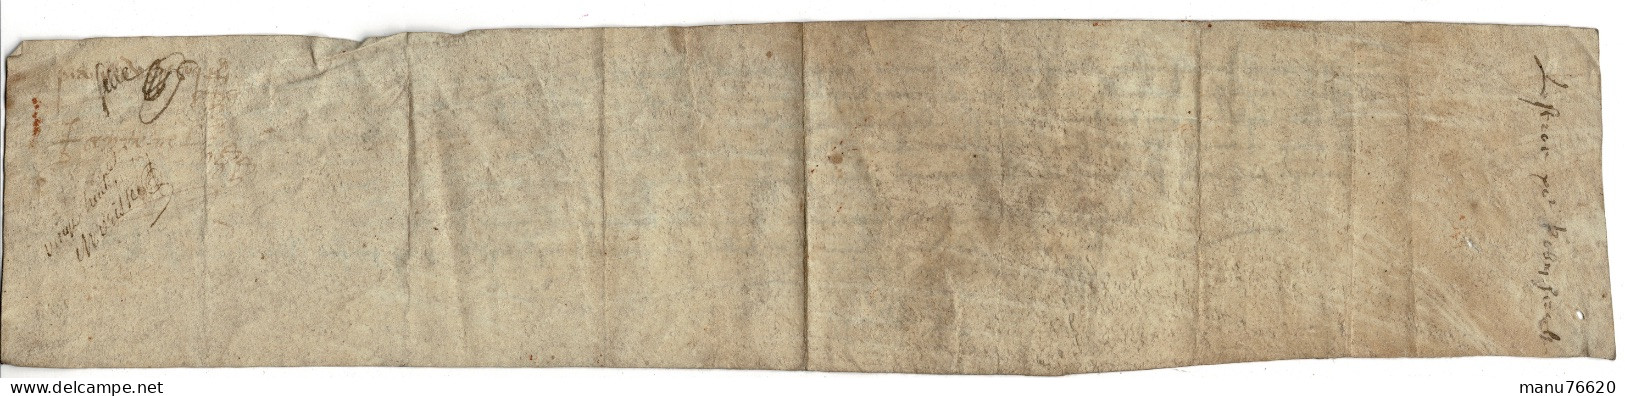 Ref 2 - RARE!, Lettre Manuscrite , Document Notarial , Le Havre Et Environs , écritures Très Anciennes , Papier épais. - Manuscripts